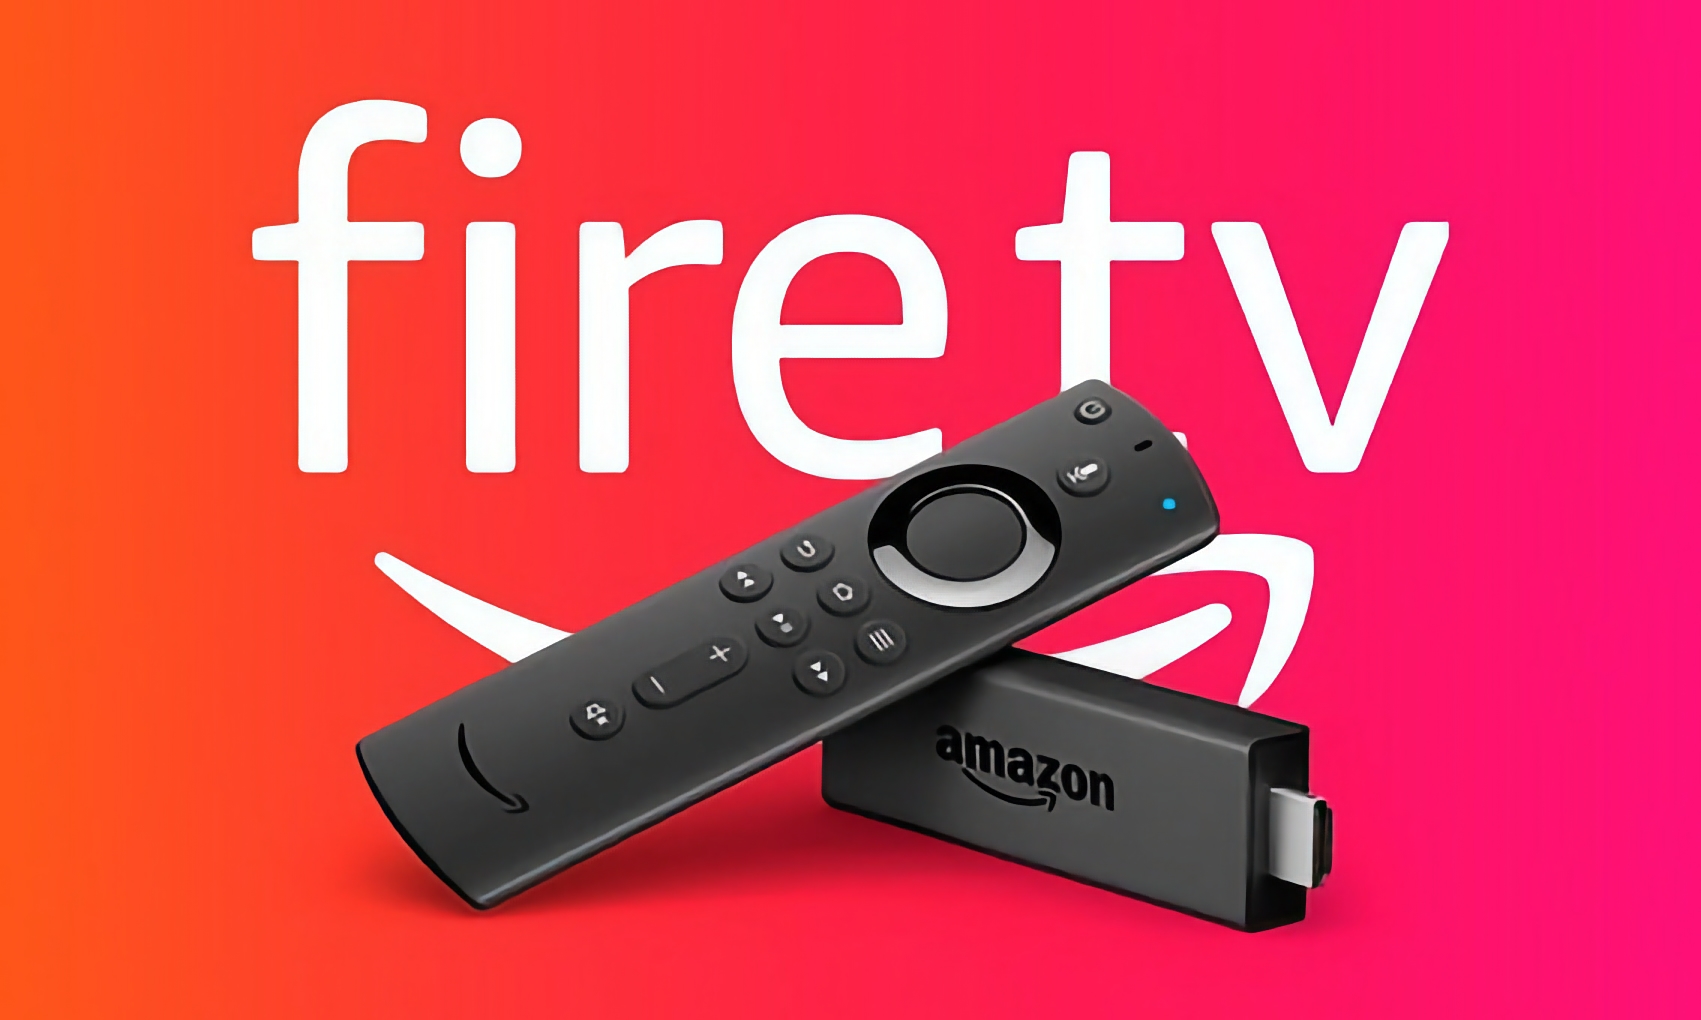 Le Fire TV Stick Lite d'Amazon avec la télécommande vocale Alexa est moins cher que 20